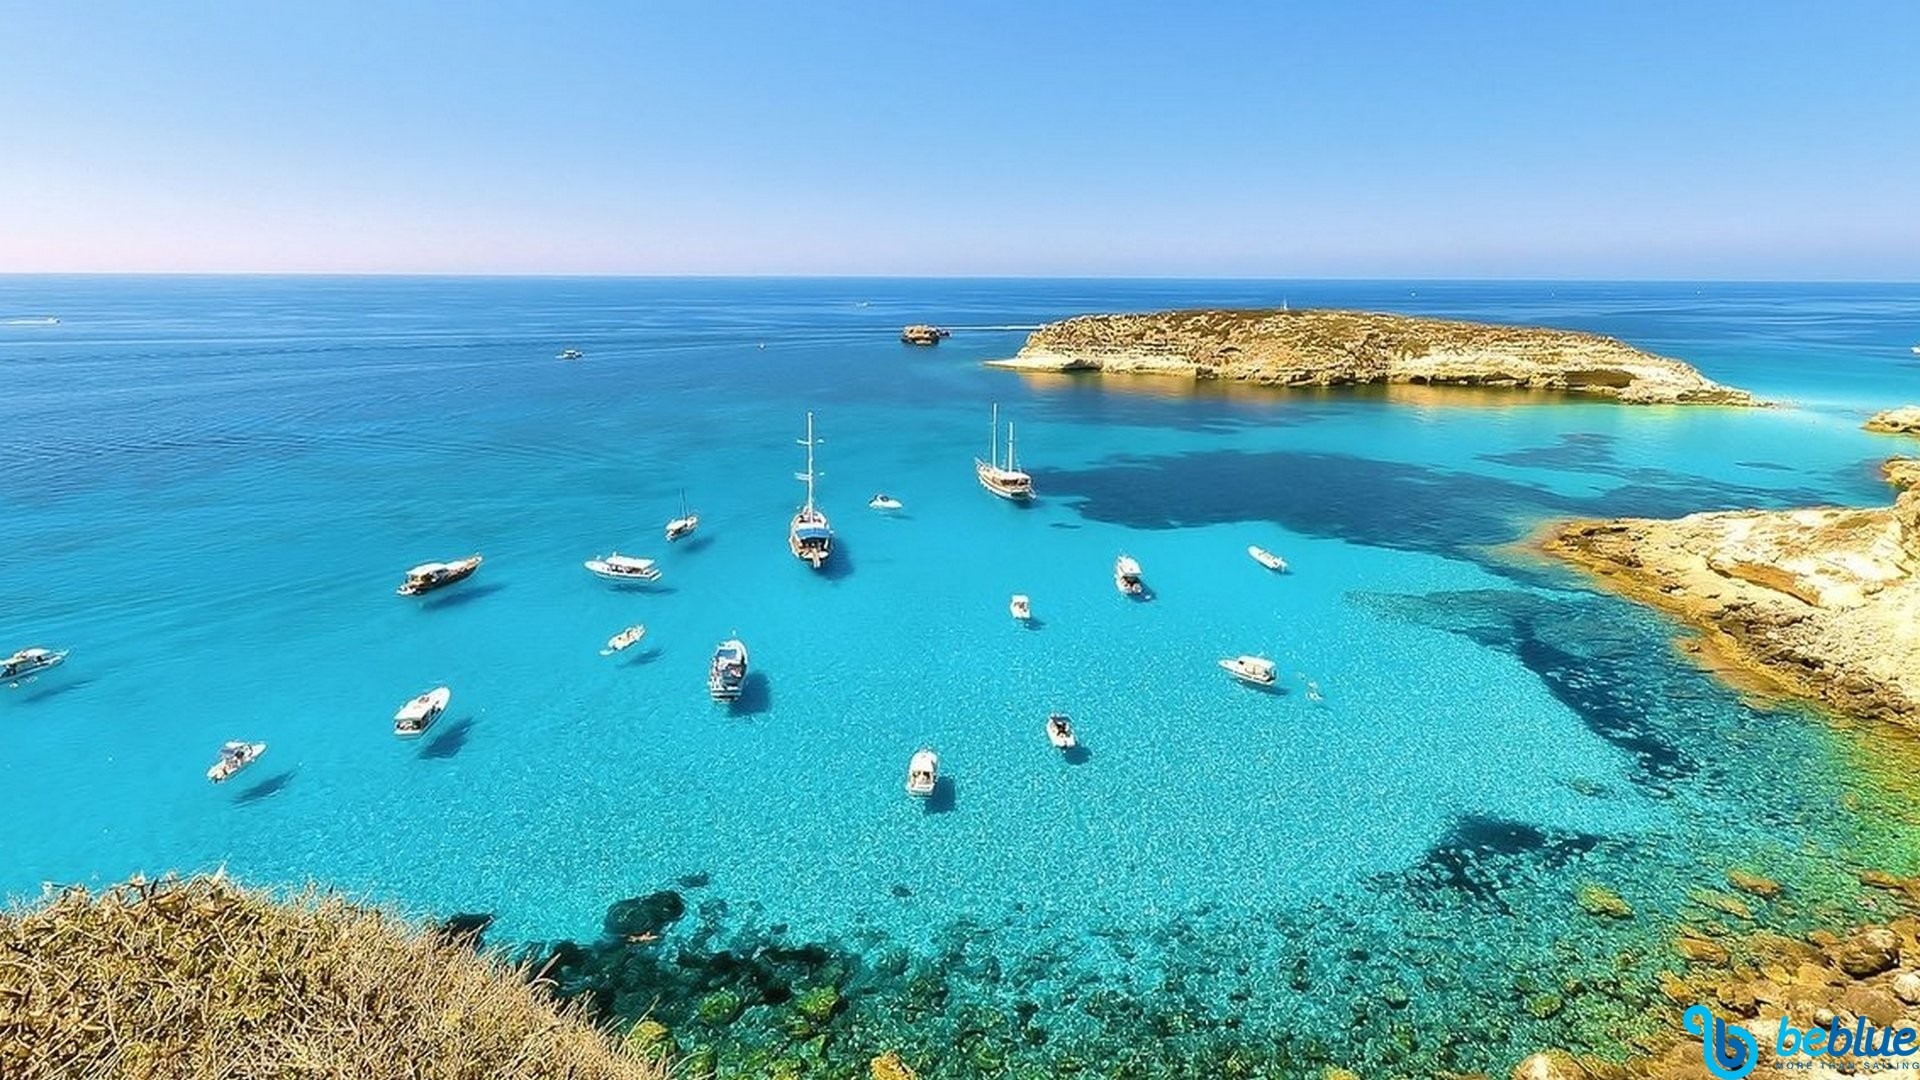 Flottiglia a Malta, Lampedusa e Linosa: 11 giorni "All inclusive"